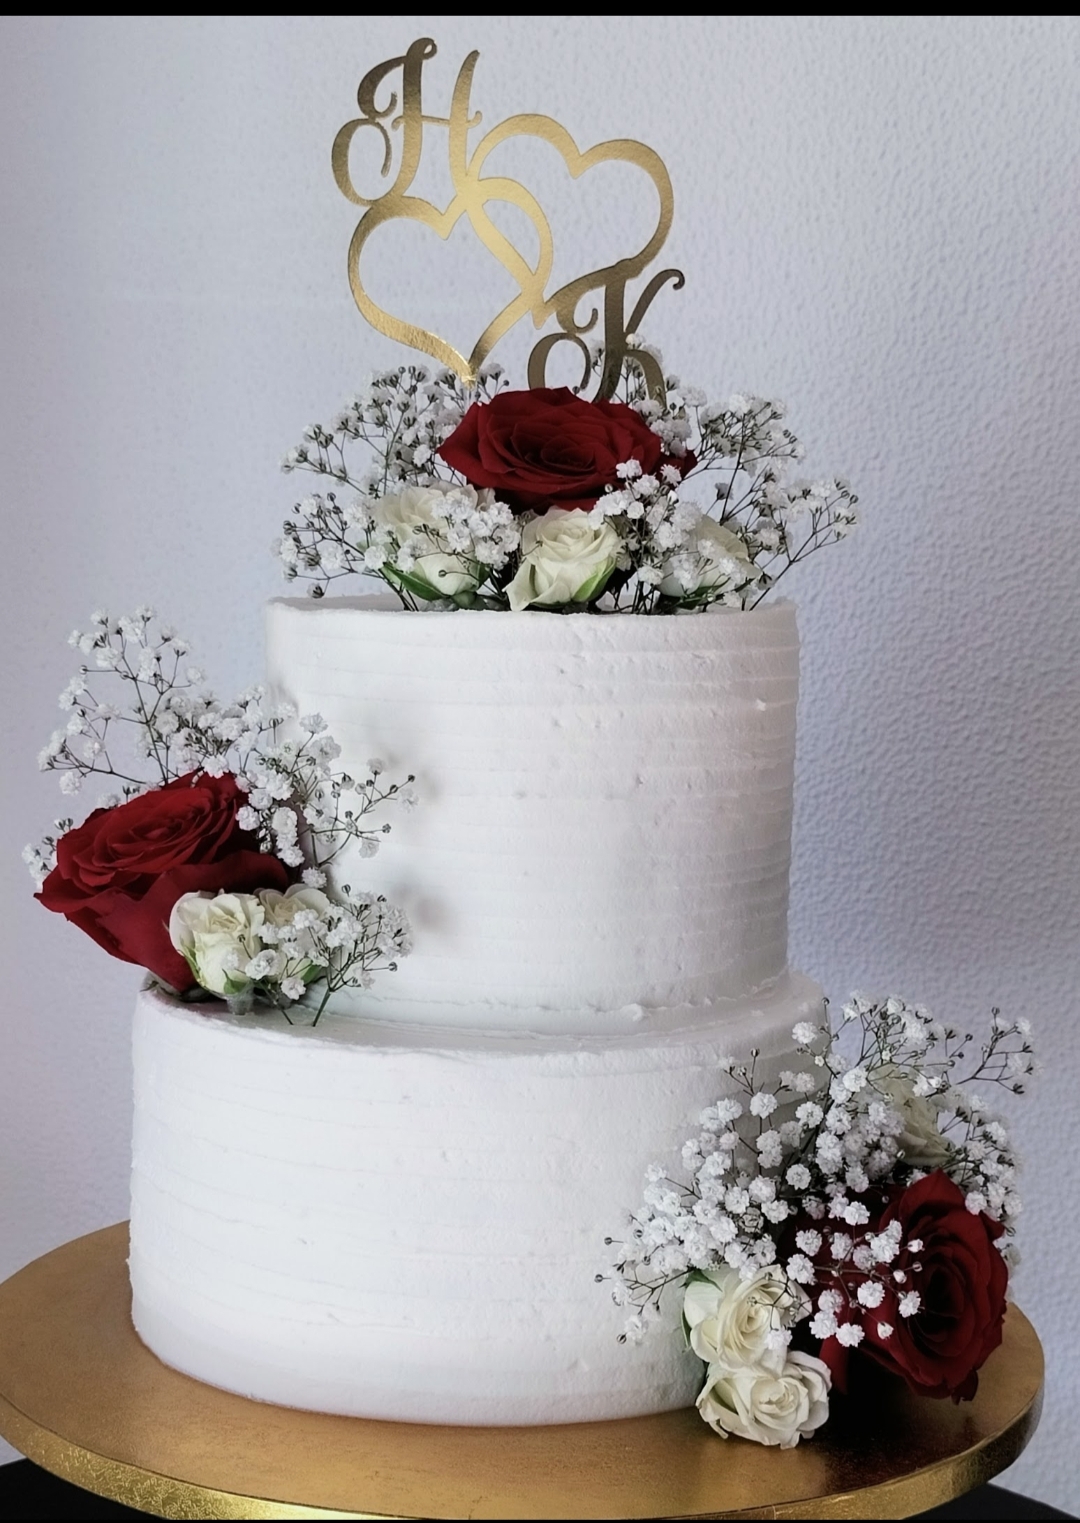 Sabores Vera e Cláudio bolos festivos para todas as ocasiões - Moita - Bolos para Casamentos